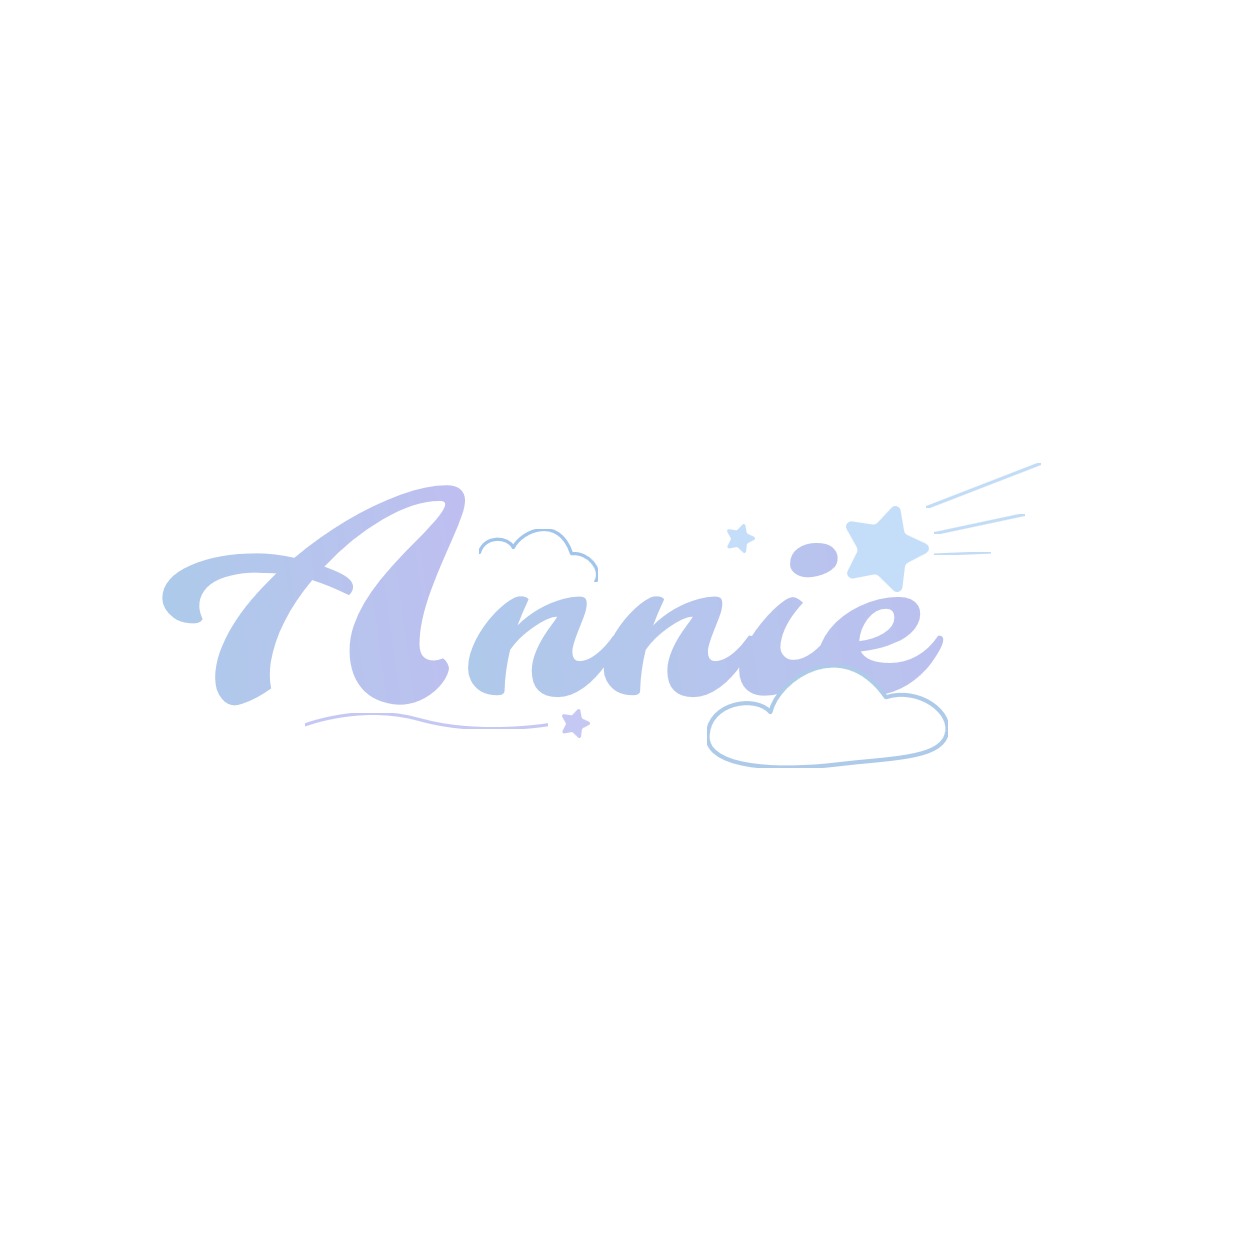 Annie‘s shop